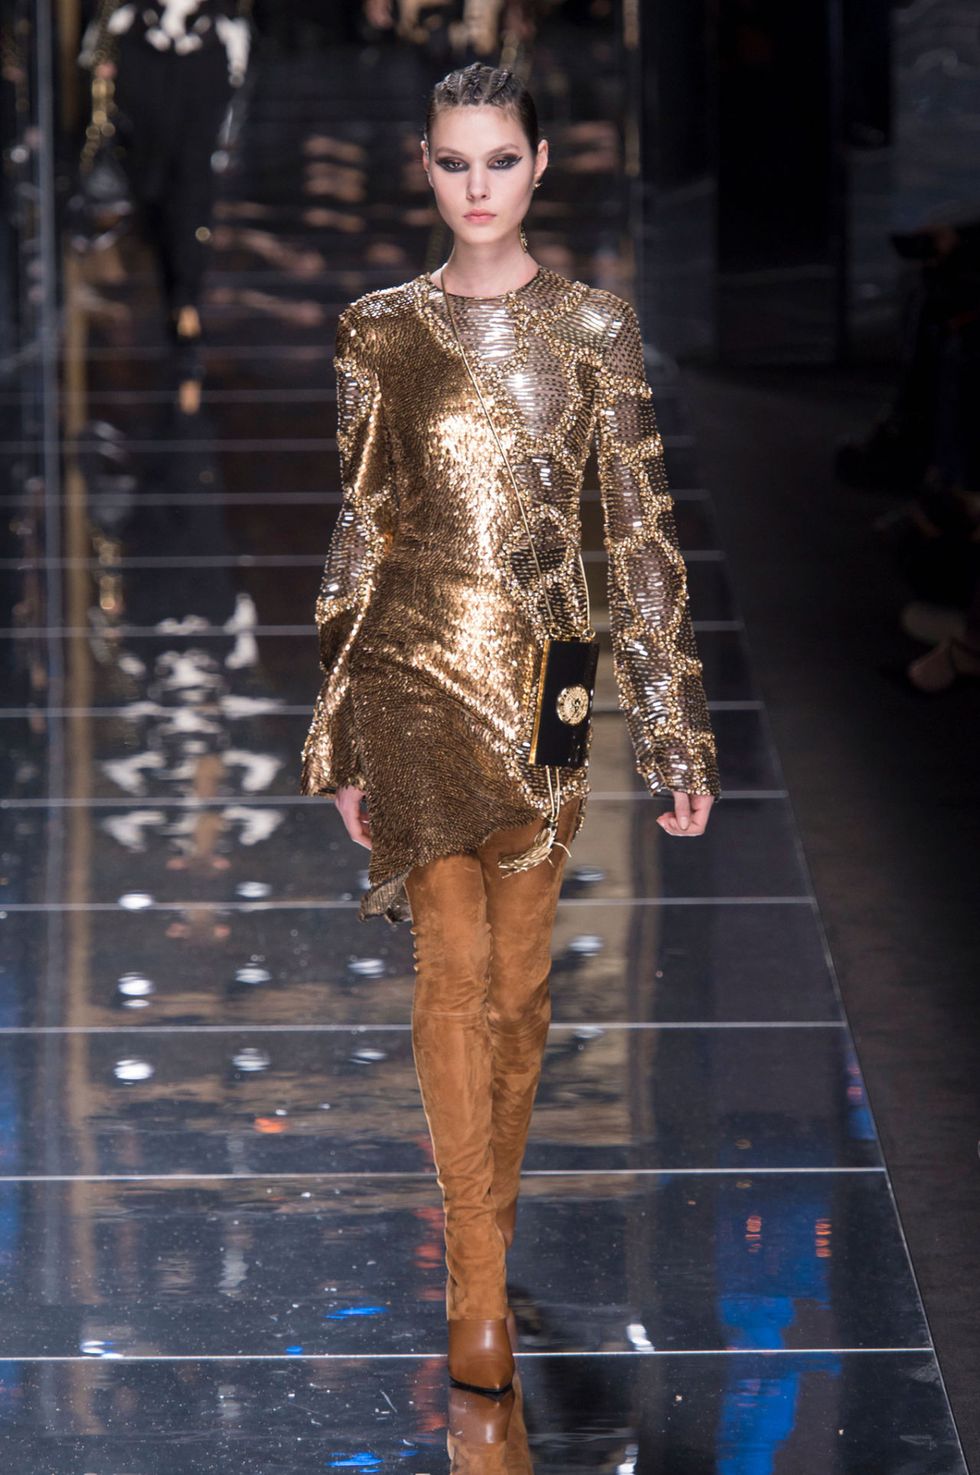 Dalle passerelle della Parigi Fashion Week risplendono solo vestiti eleganti oro, il vero lusso per le tue serate glam: abiti scintillanti, lucenti e riflettenti realizzati in tessuti dorati a 24 carati